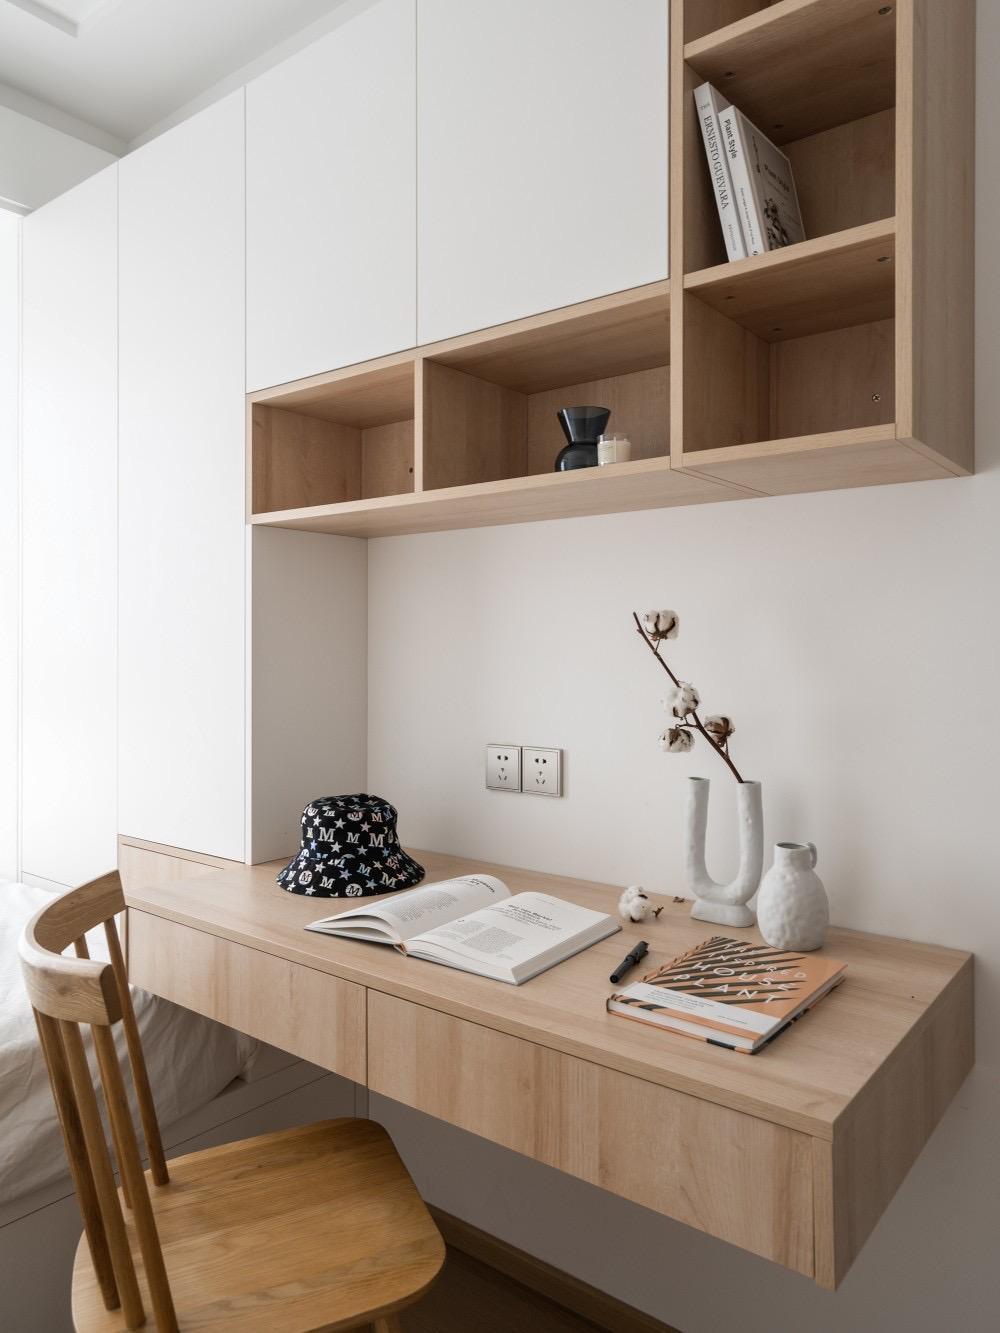 次卧室的空间妙用术:榻榻米 柜子 书桌设计